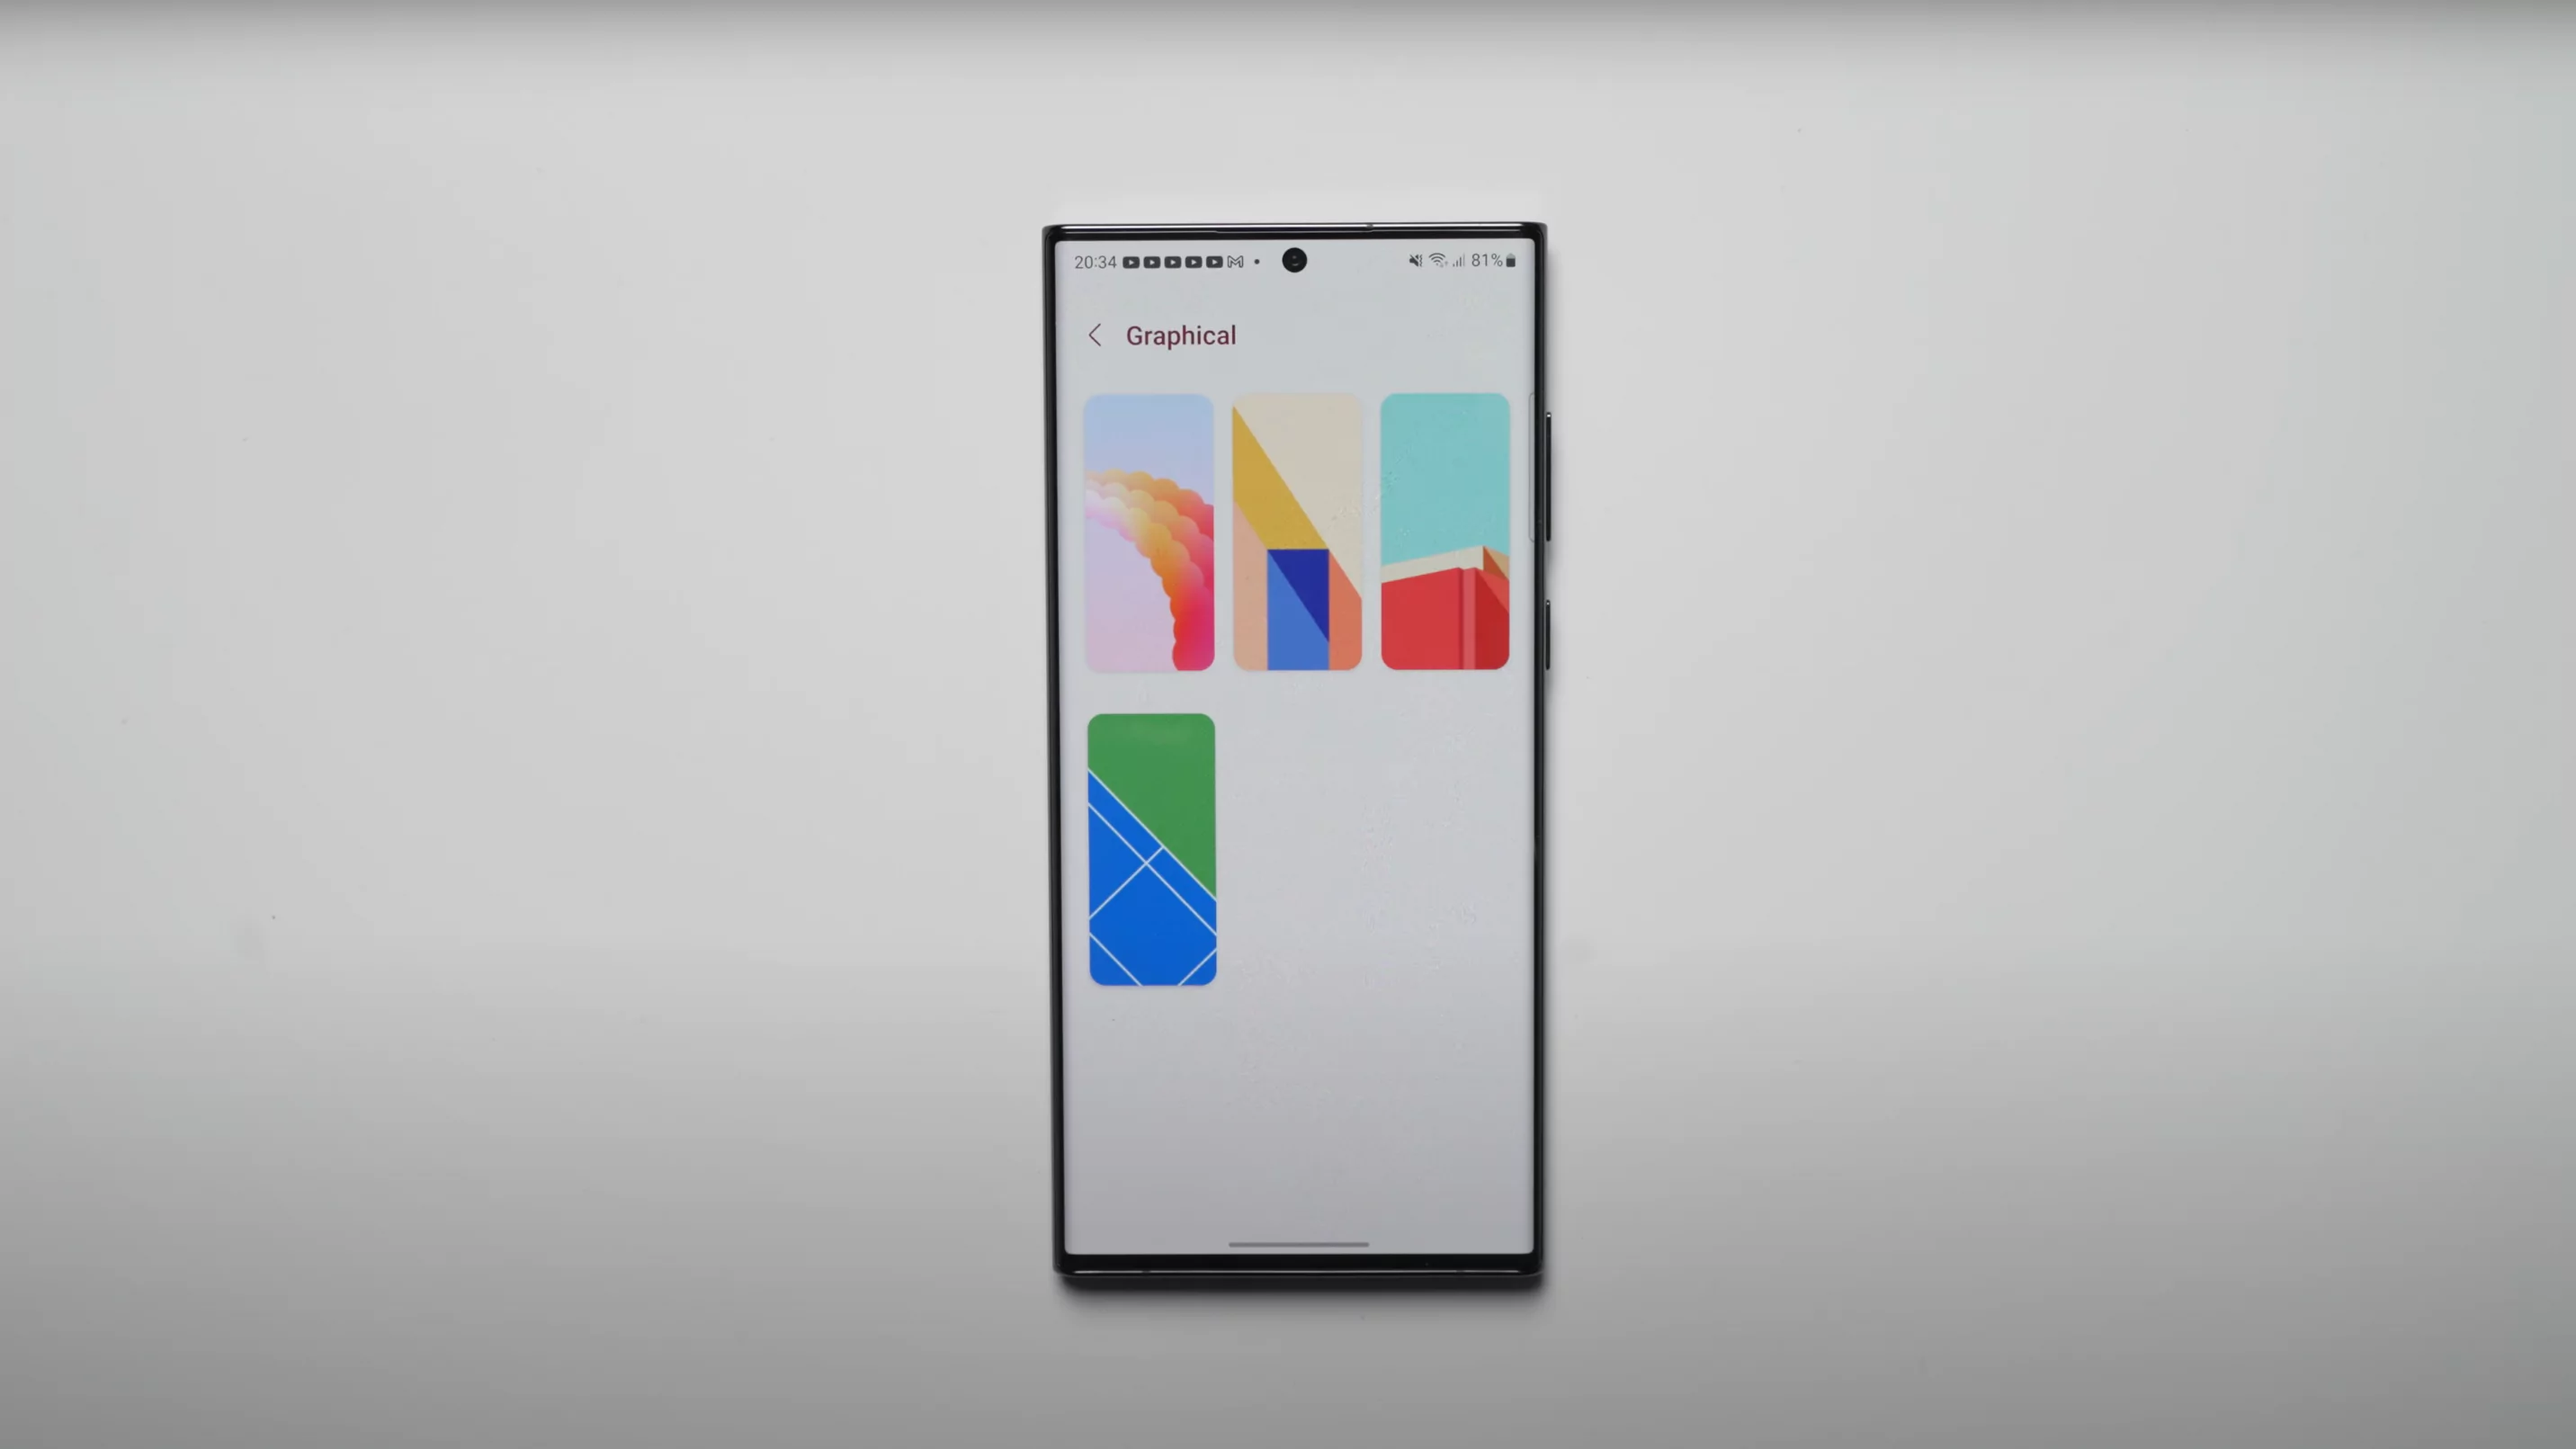 Cách thay đổi hình nền màn hình khóa tự động điện thoại Samsung   Fptshopcomvn